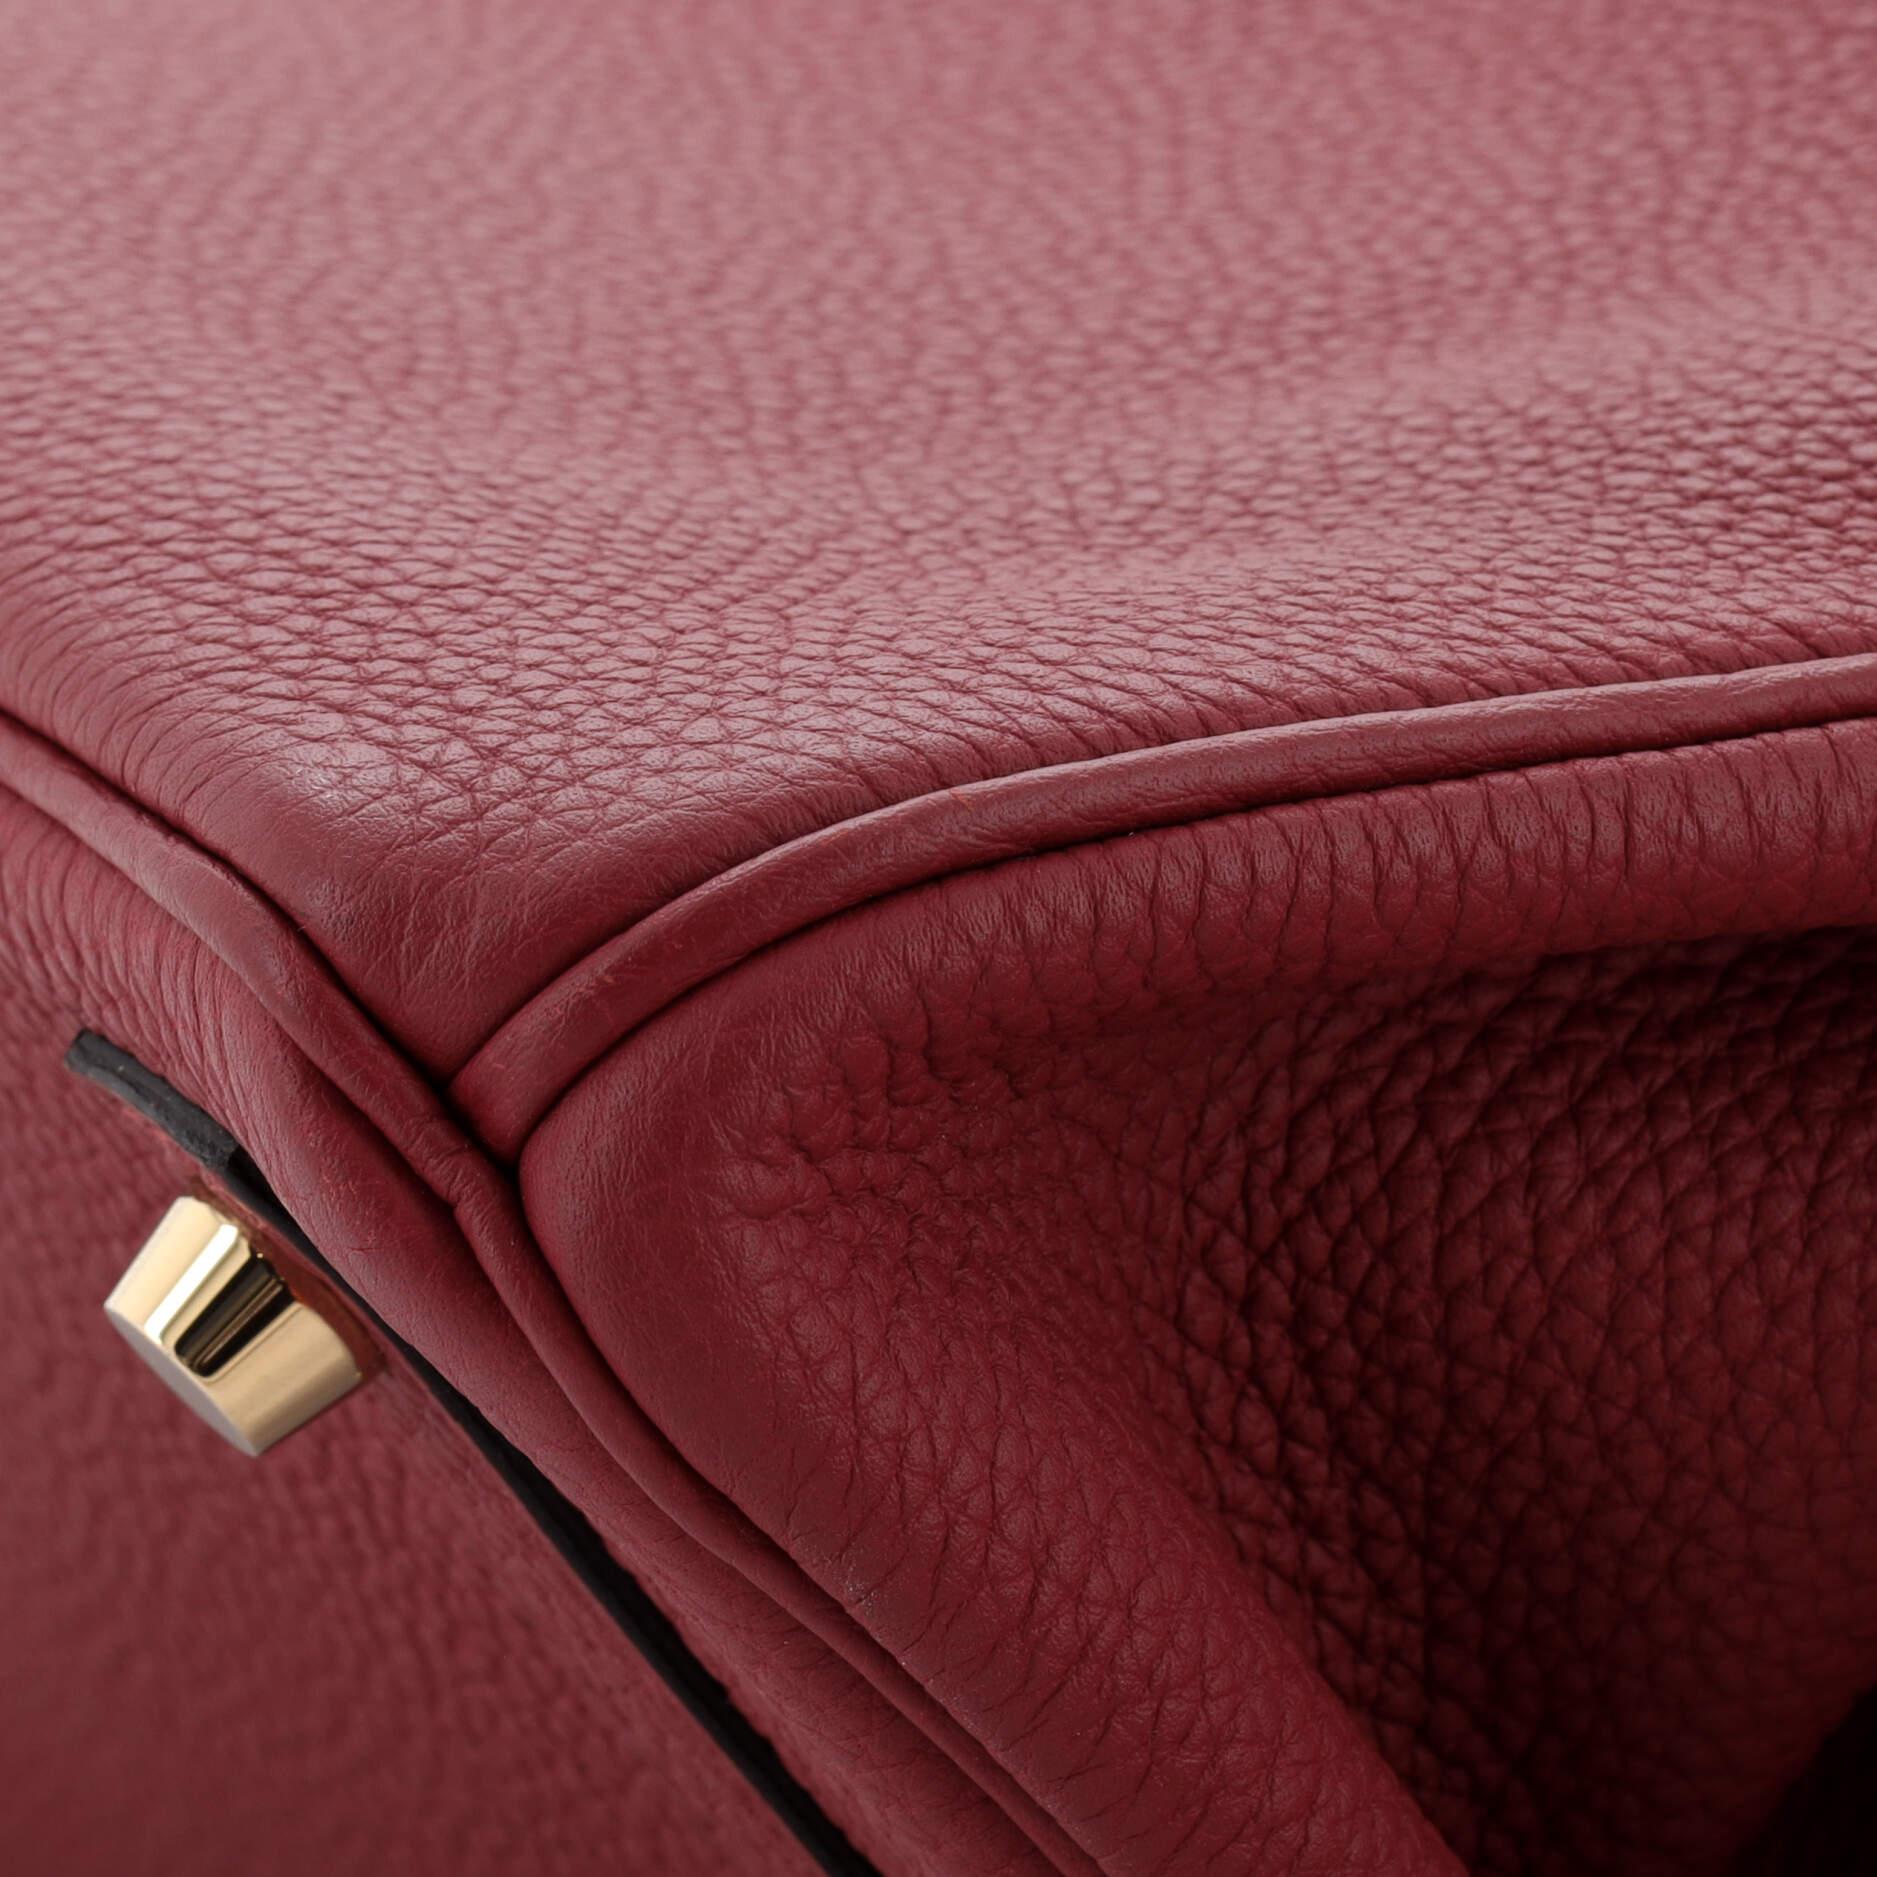 Hermes Birkin Handbag Rouge Grenat Togo with Gold Hardware 25 5